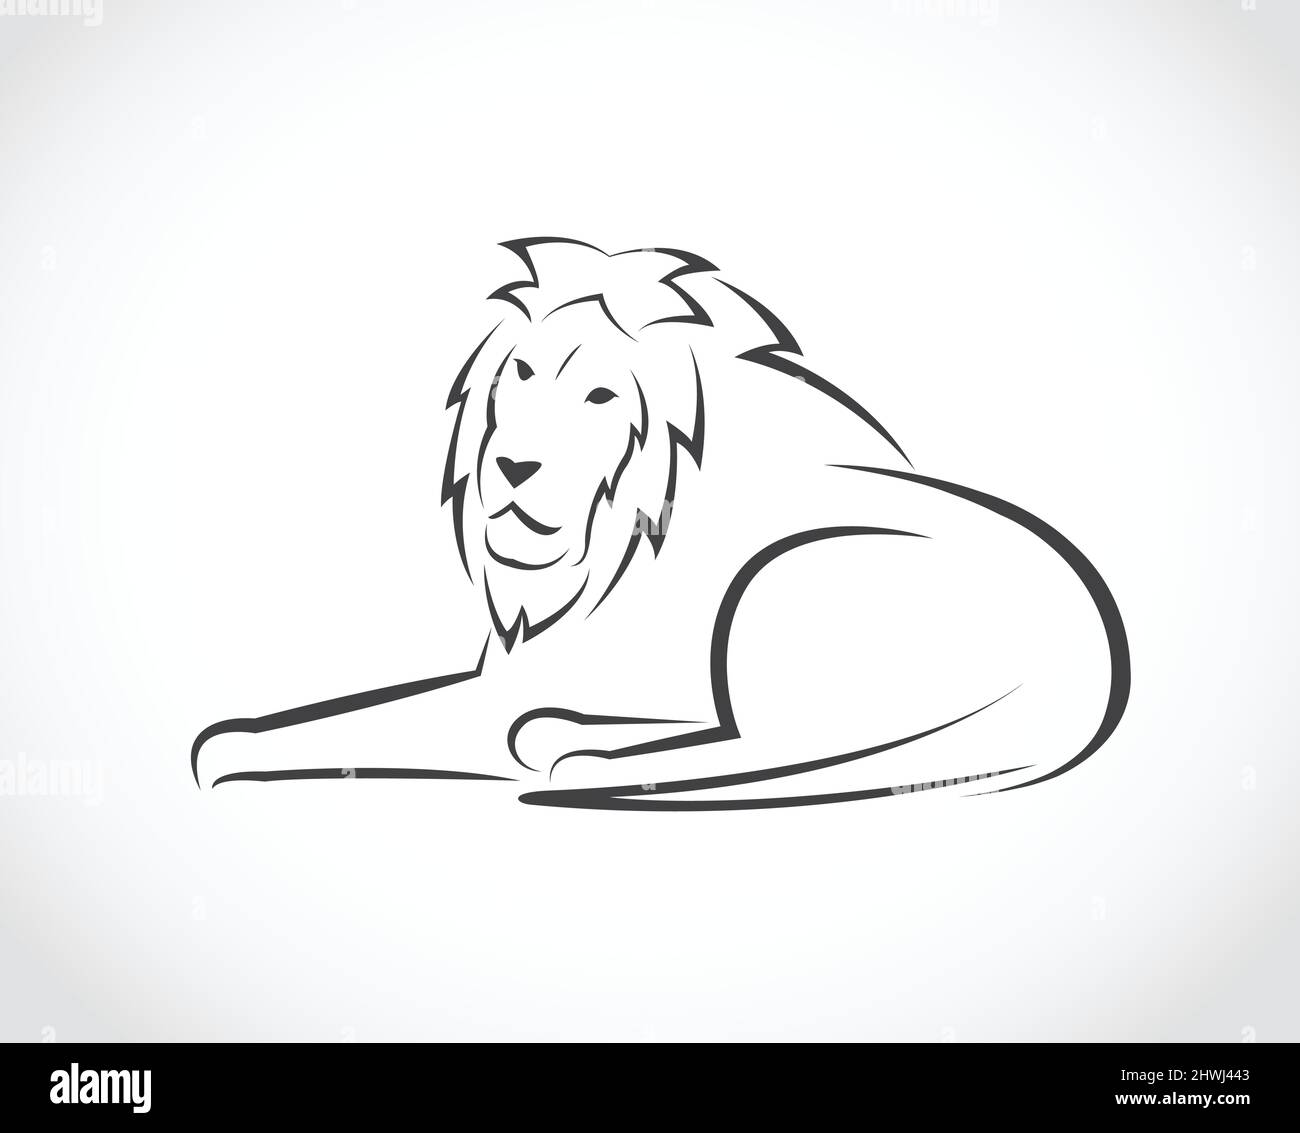 Imagen vectorial de un león sobre fondo blanco. Ilustración de vector en capas fácil de editar. Ilustración del Vector